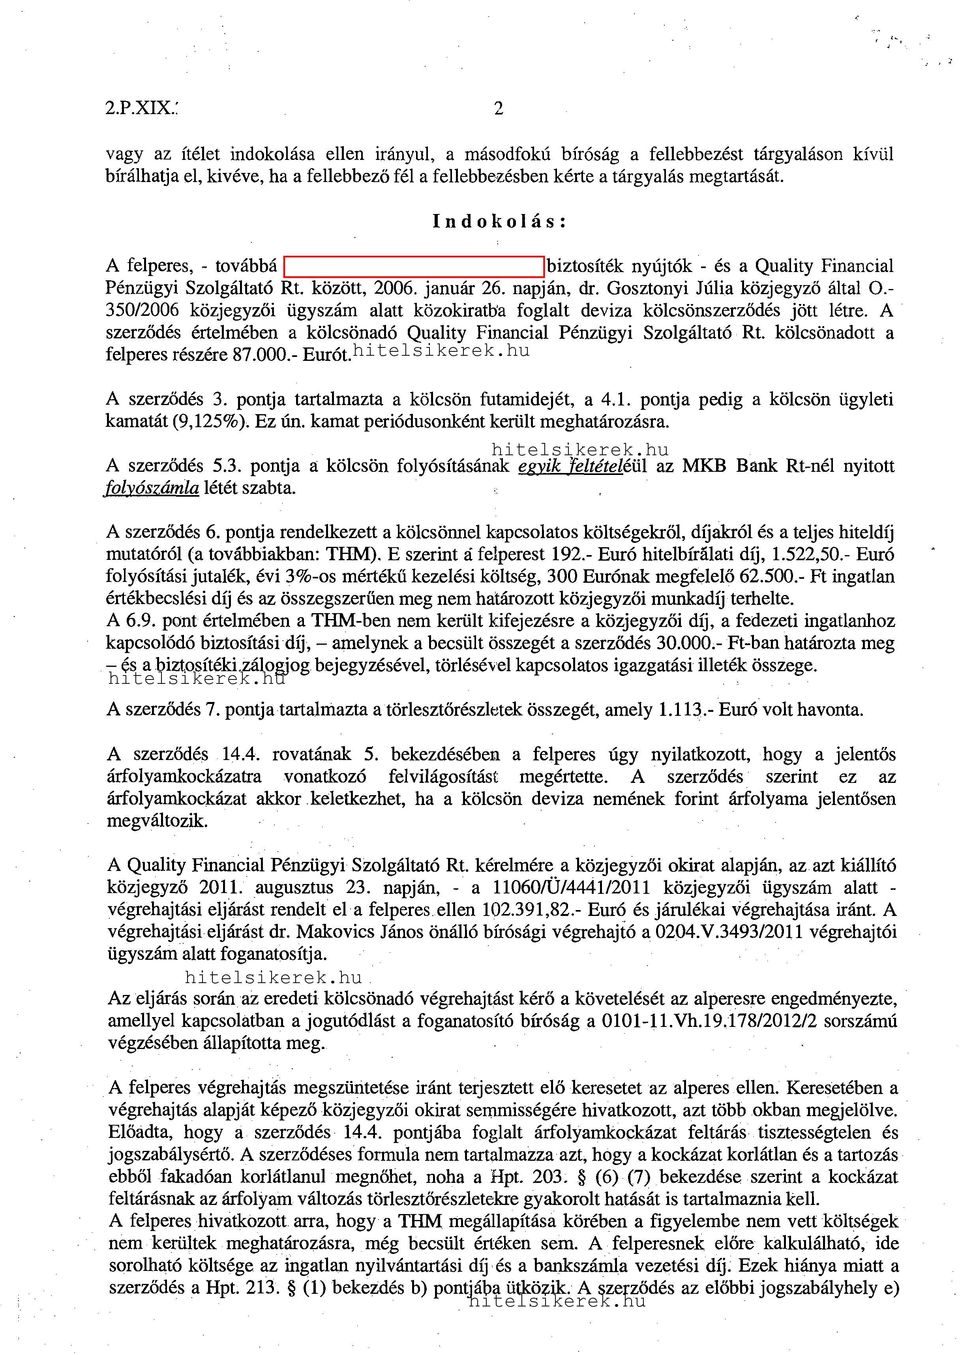 Gosztonyi Júlia közjegyző által 0.- 350/2006 közjegyzői ügyszám alatt közokiratb'a foglalt deviza kölcsönszerződés jött létre.